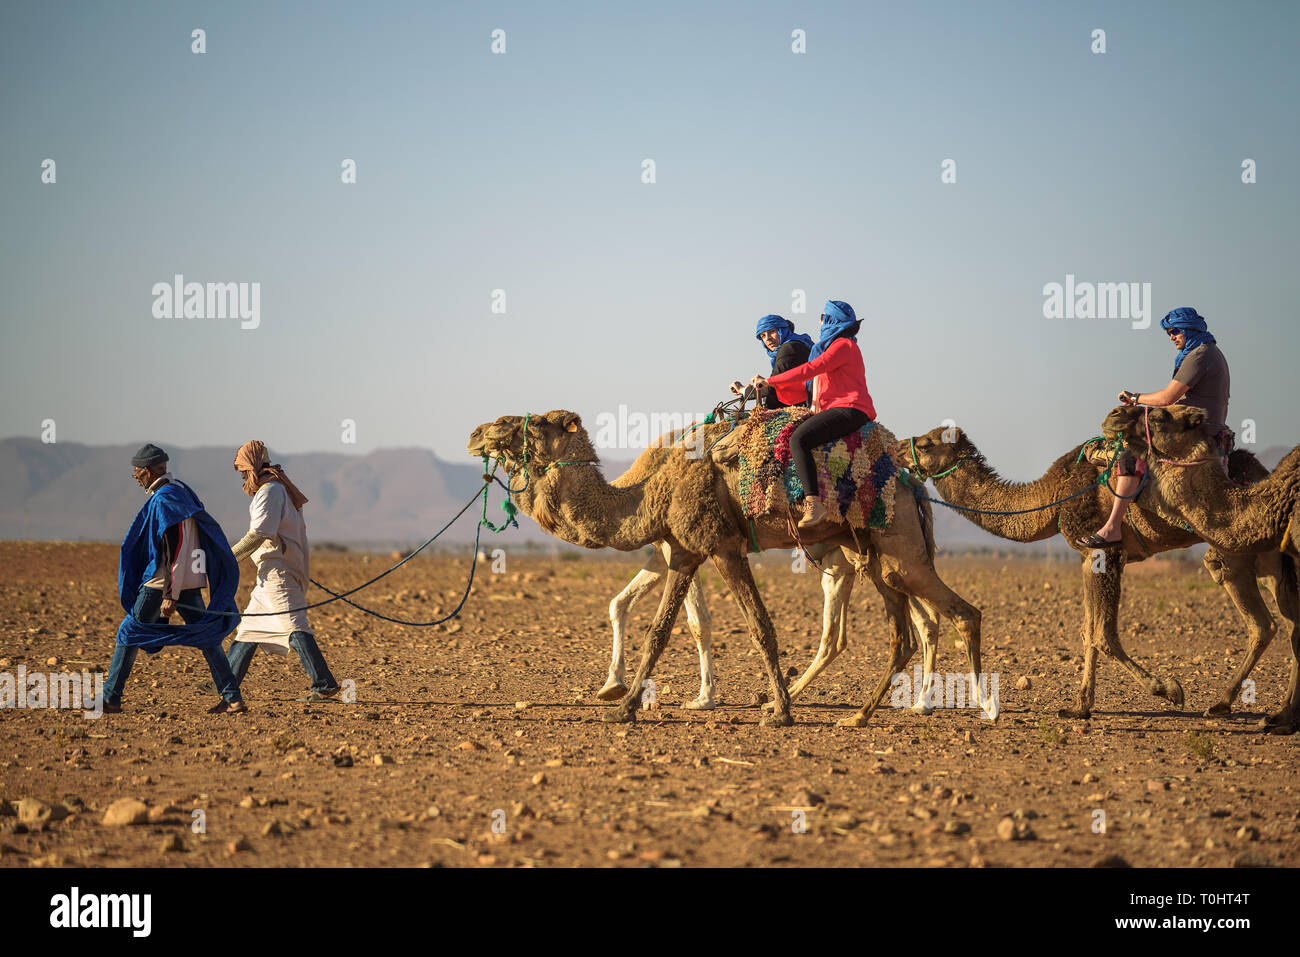 Caravana de camellos con turistas, atravesando el desierto del Sahara Foto de stock